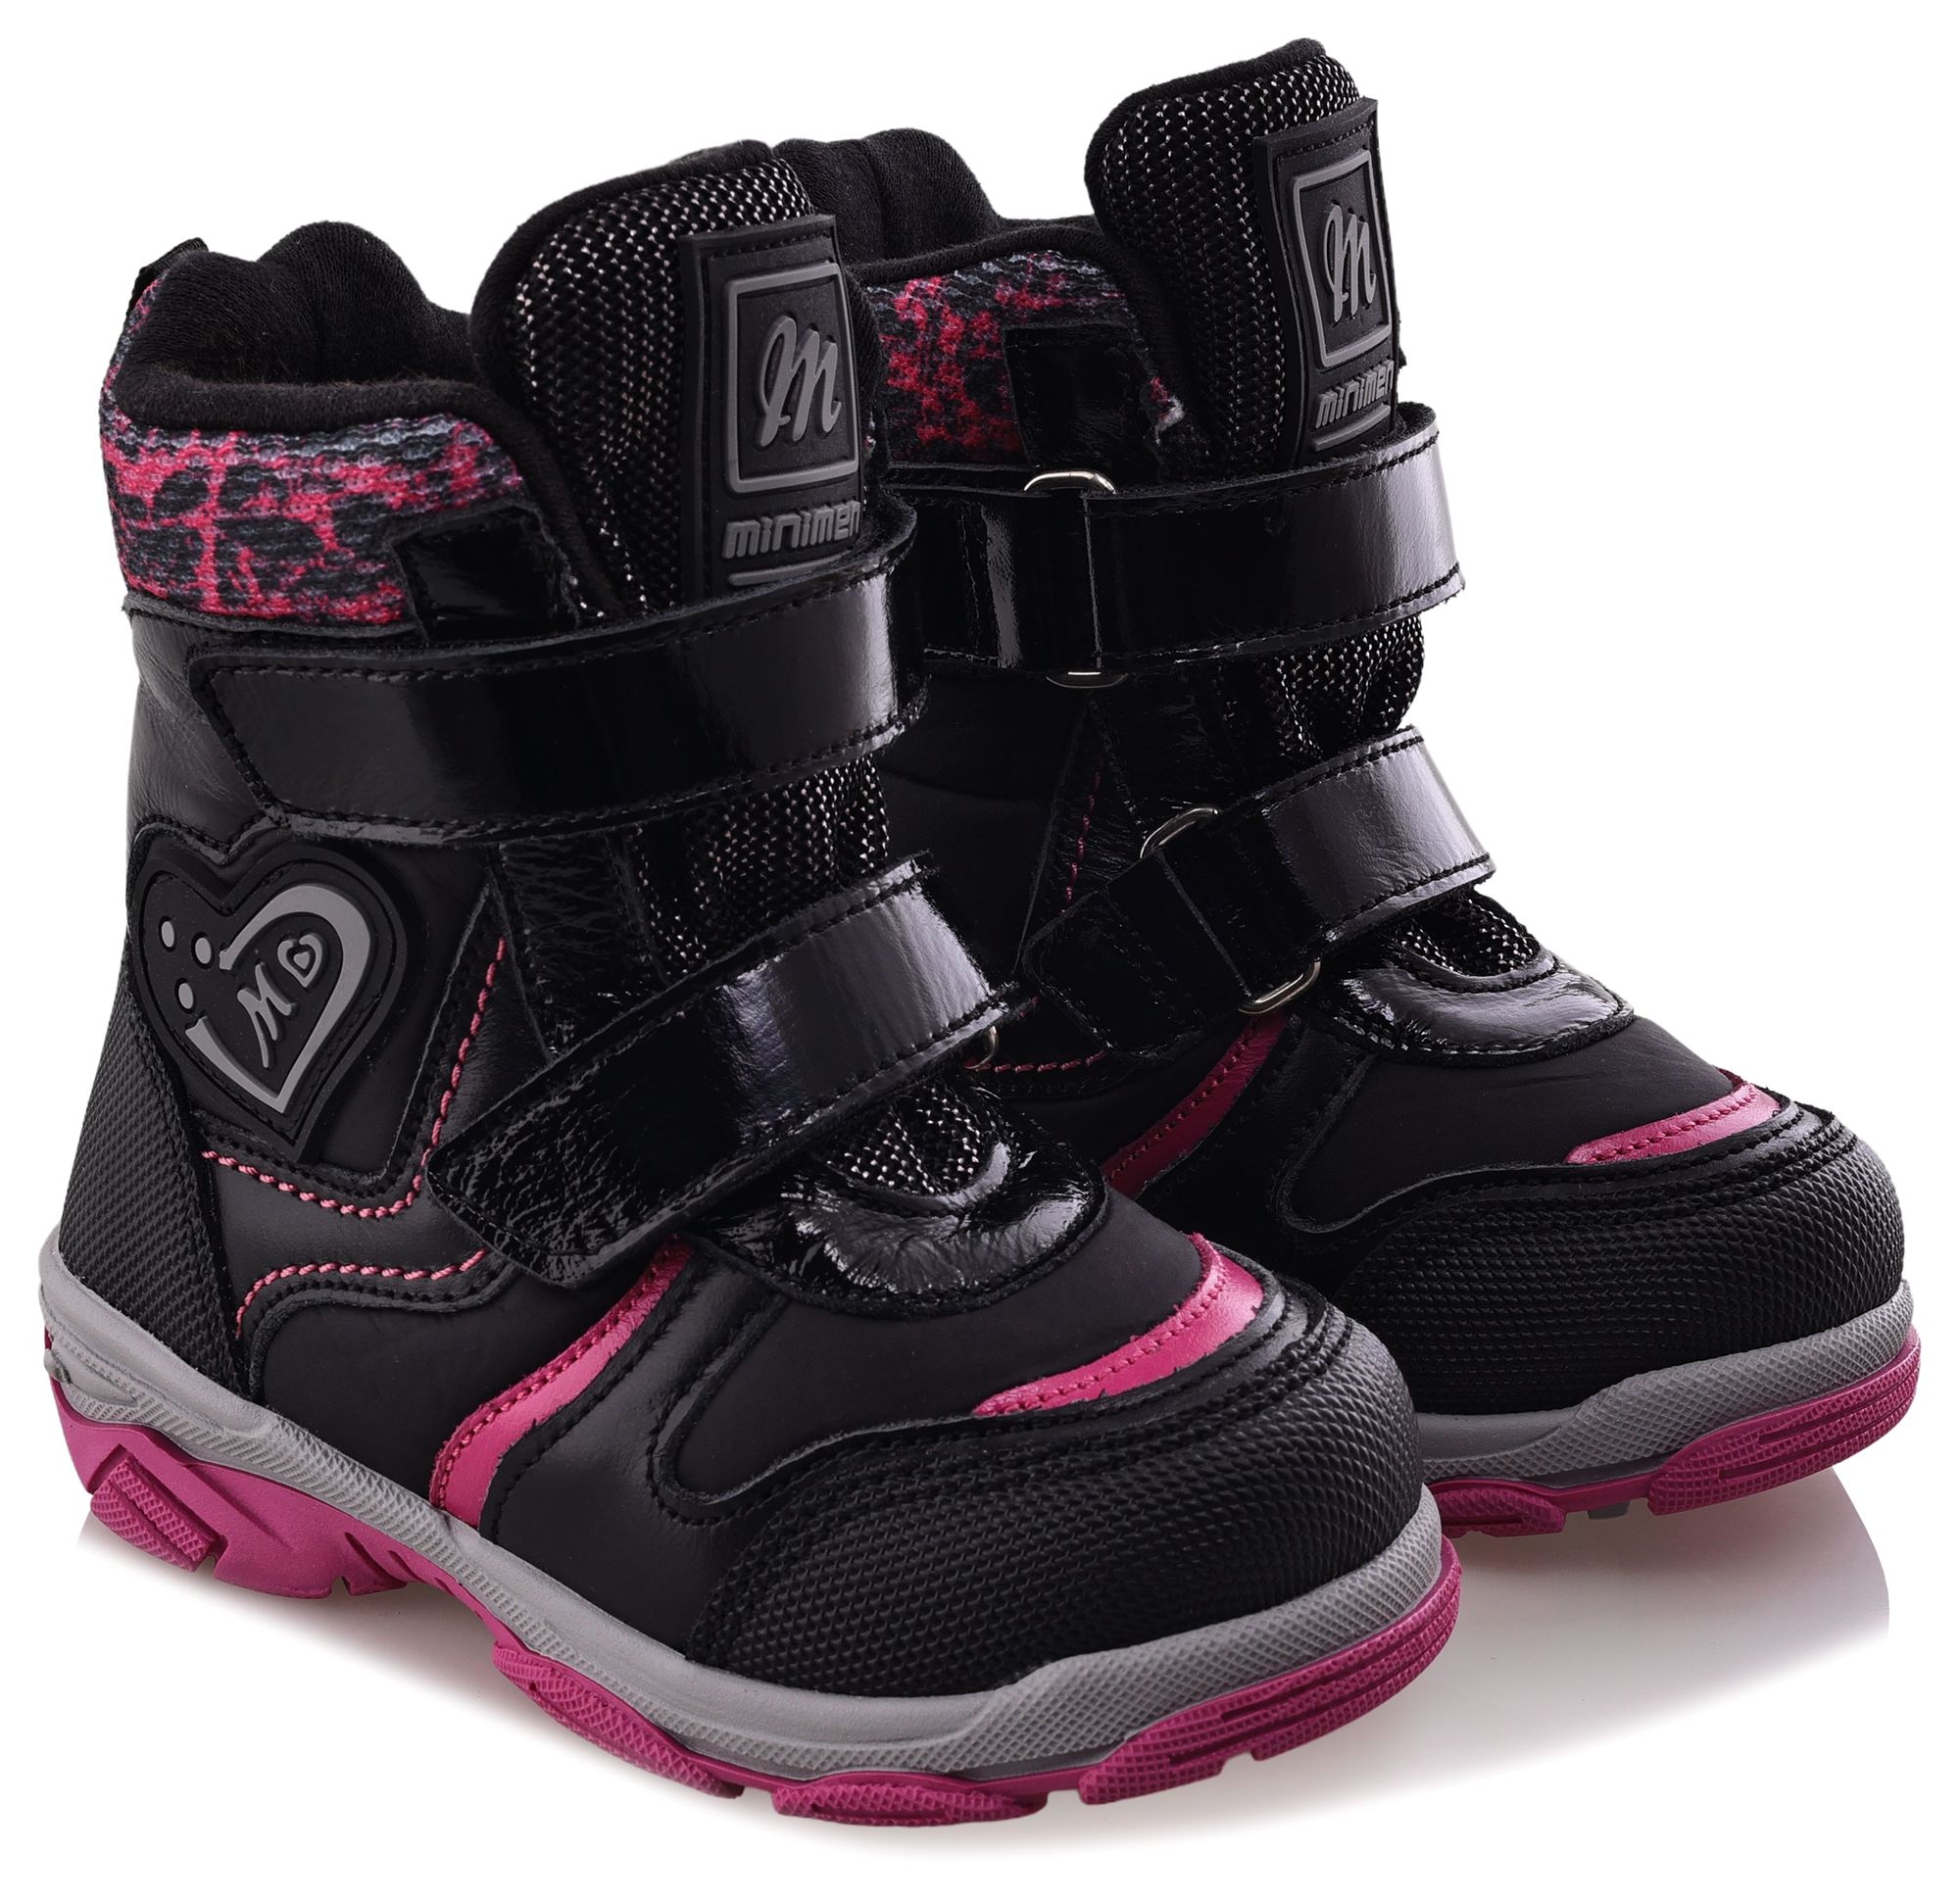 Ботинки Minimen для девочек, чёрные, размер 34, 2656-54-23B-01 ботинки minimen для девочек розовые размер 30 2656 53 23b 02